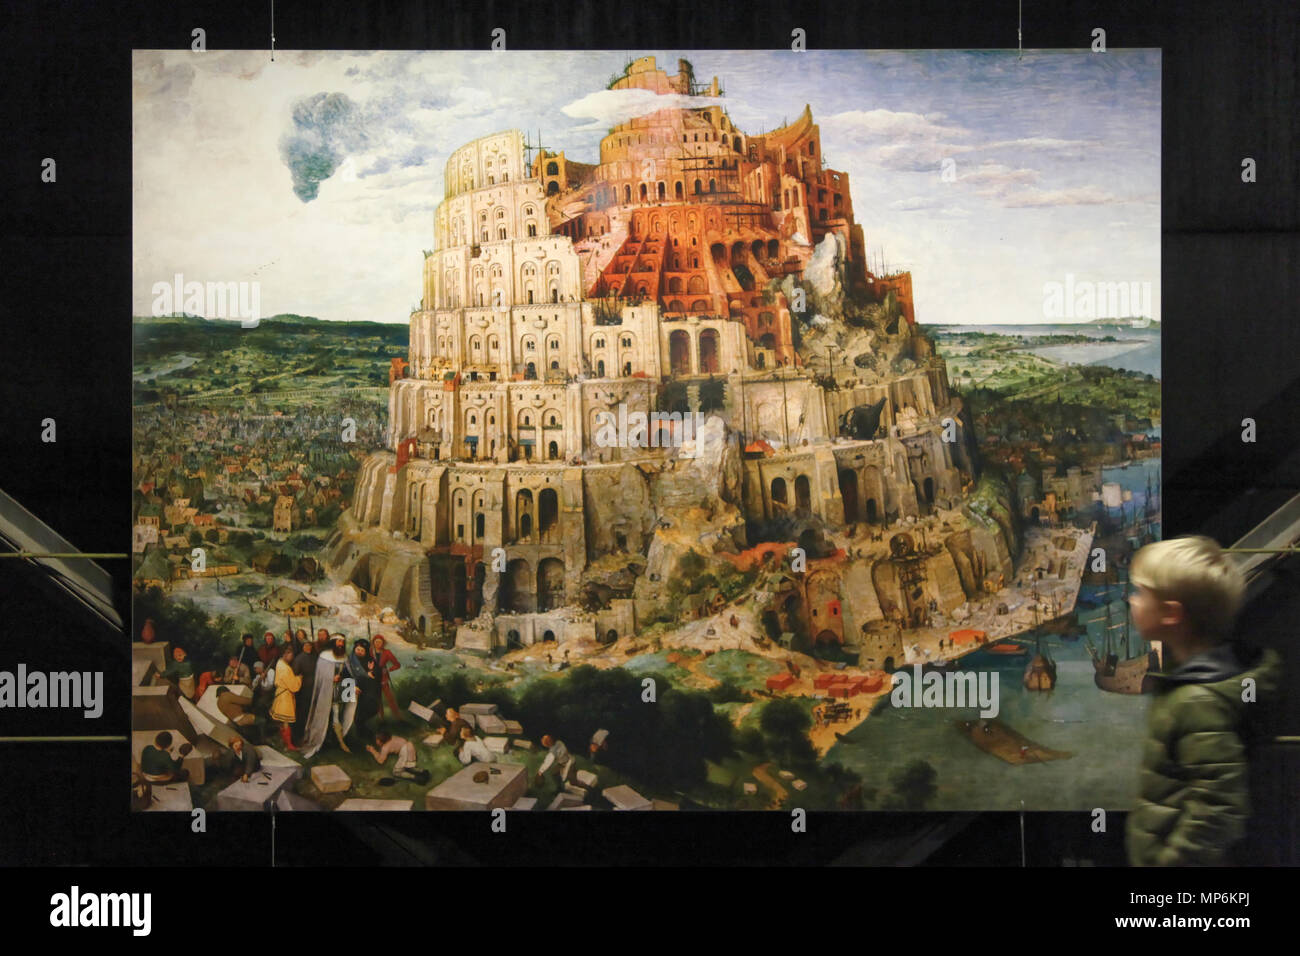 938, Oberhausen, Gasometer - Der schöne Schein - der Turm von Babel  (Bruegel, Wien) 01 n Stockfotografie - Alamy